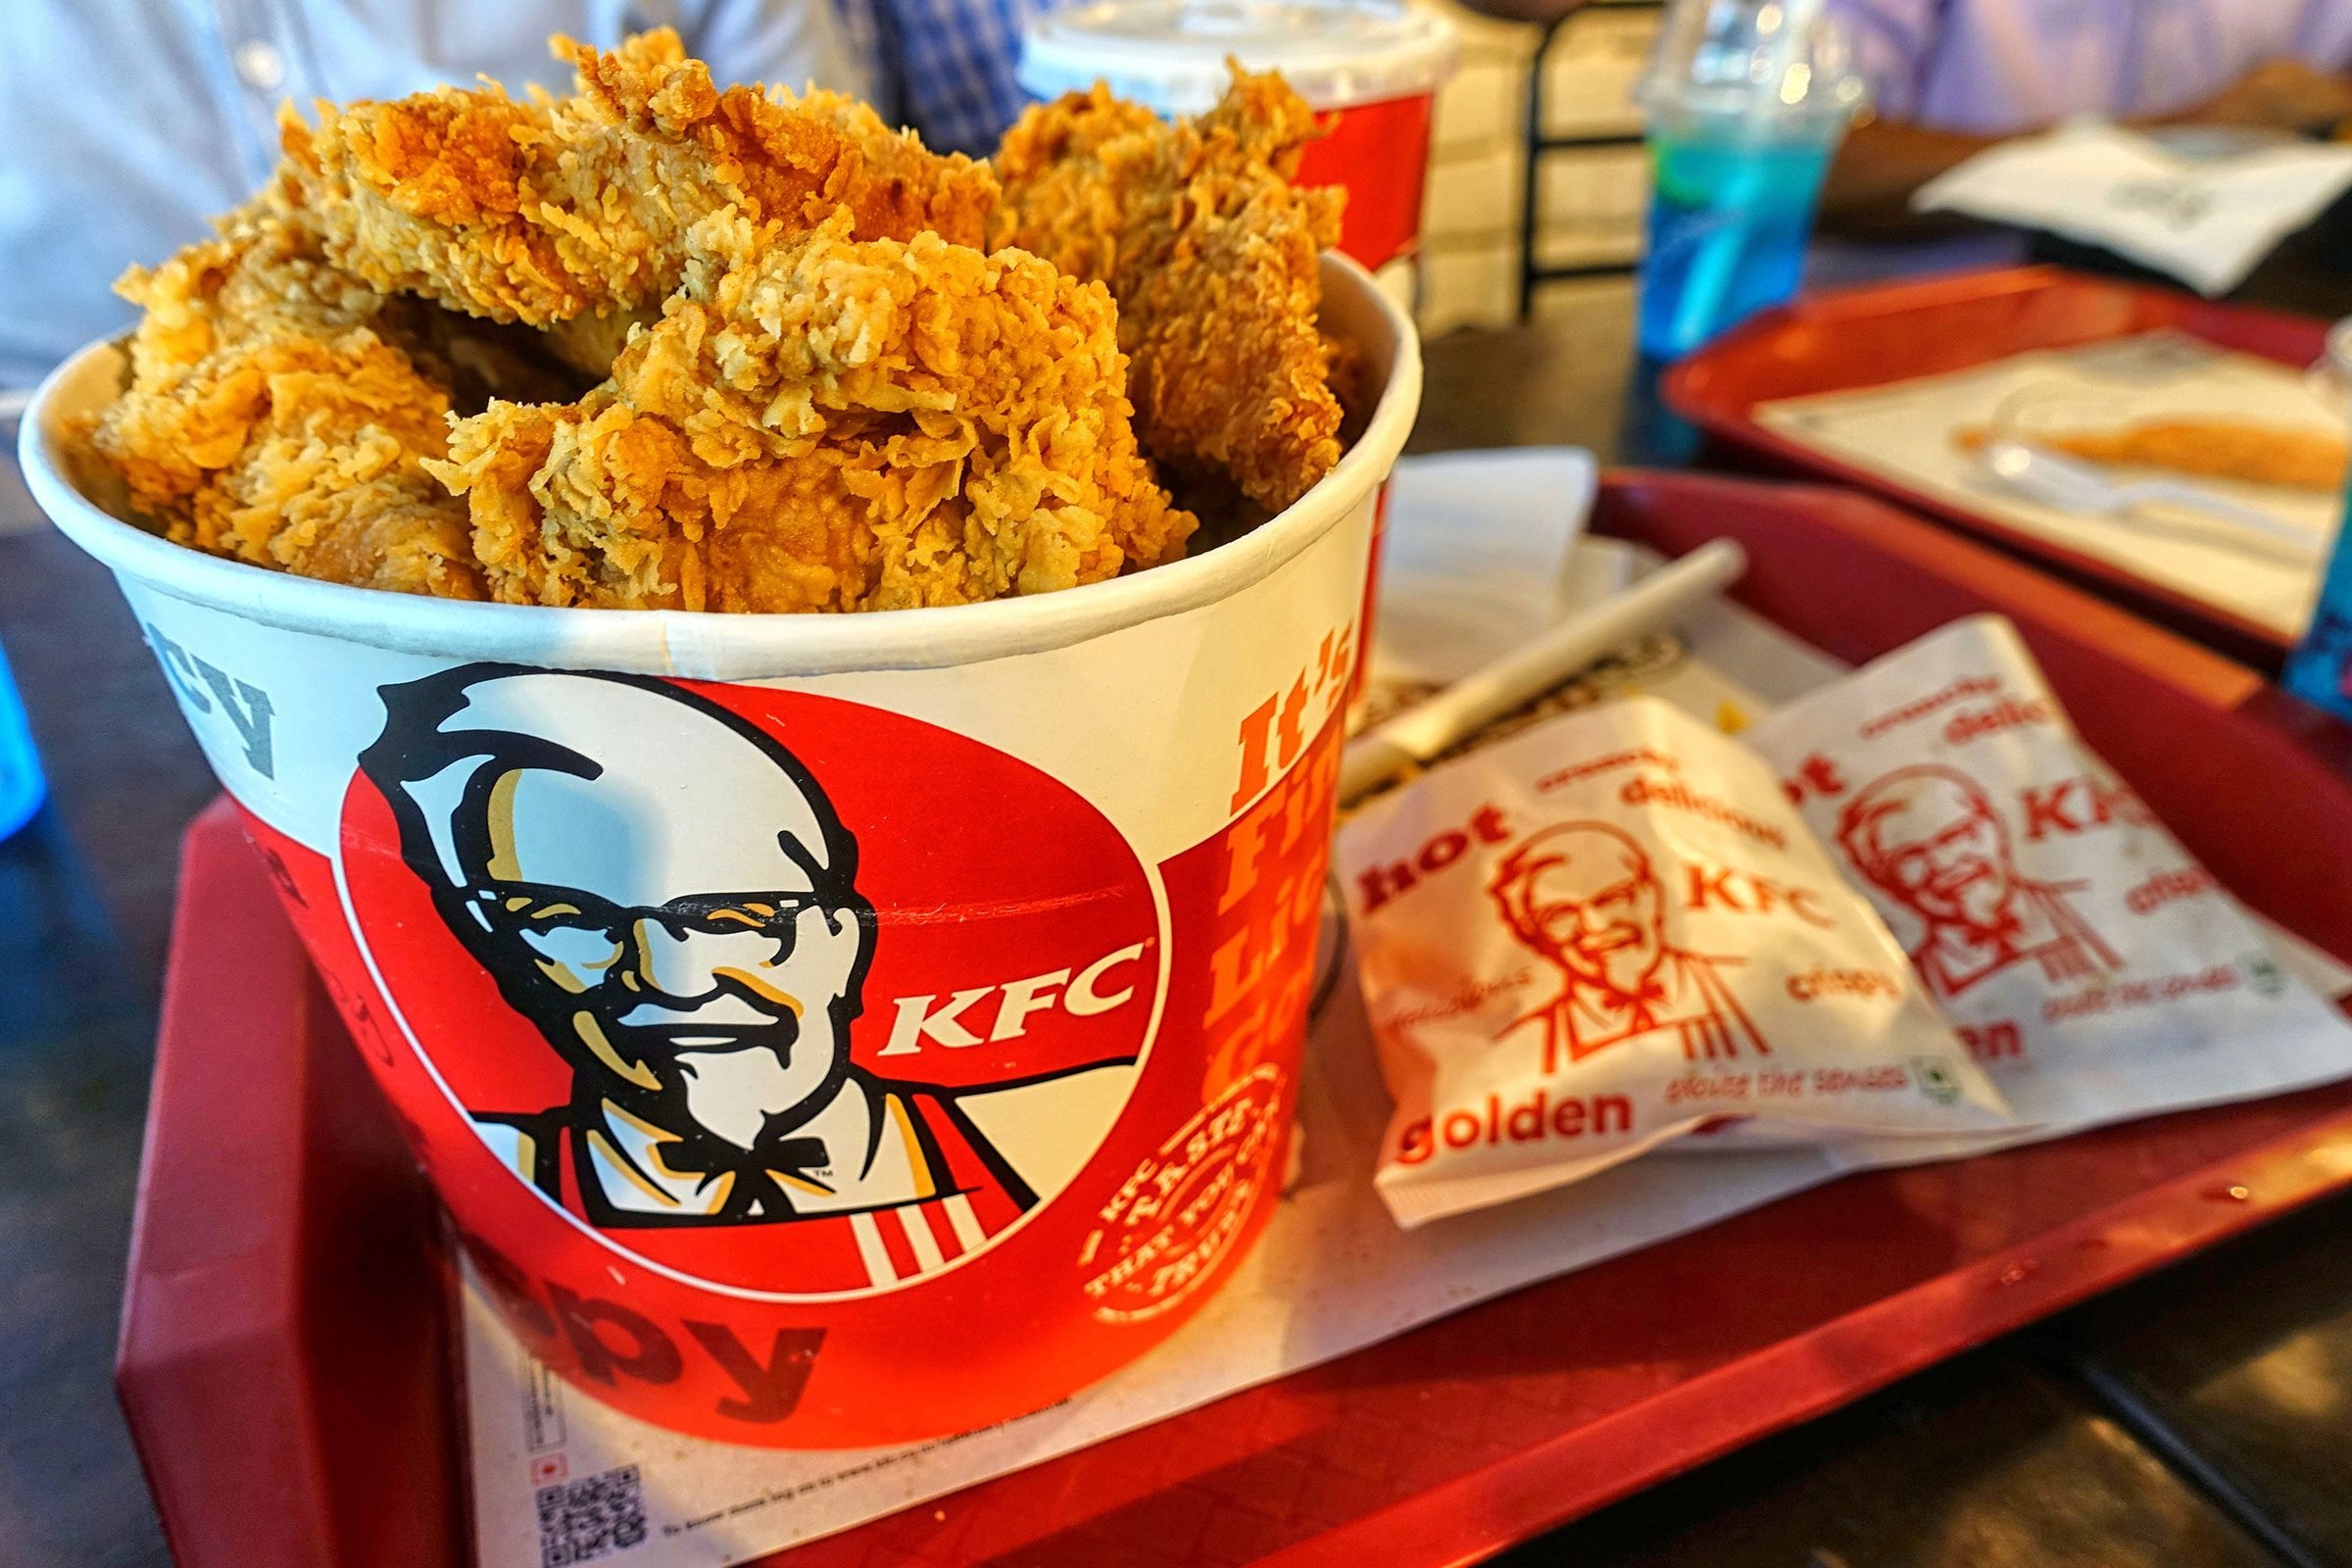 KFC gluten free menu guide.